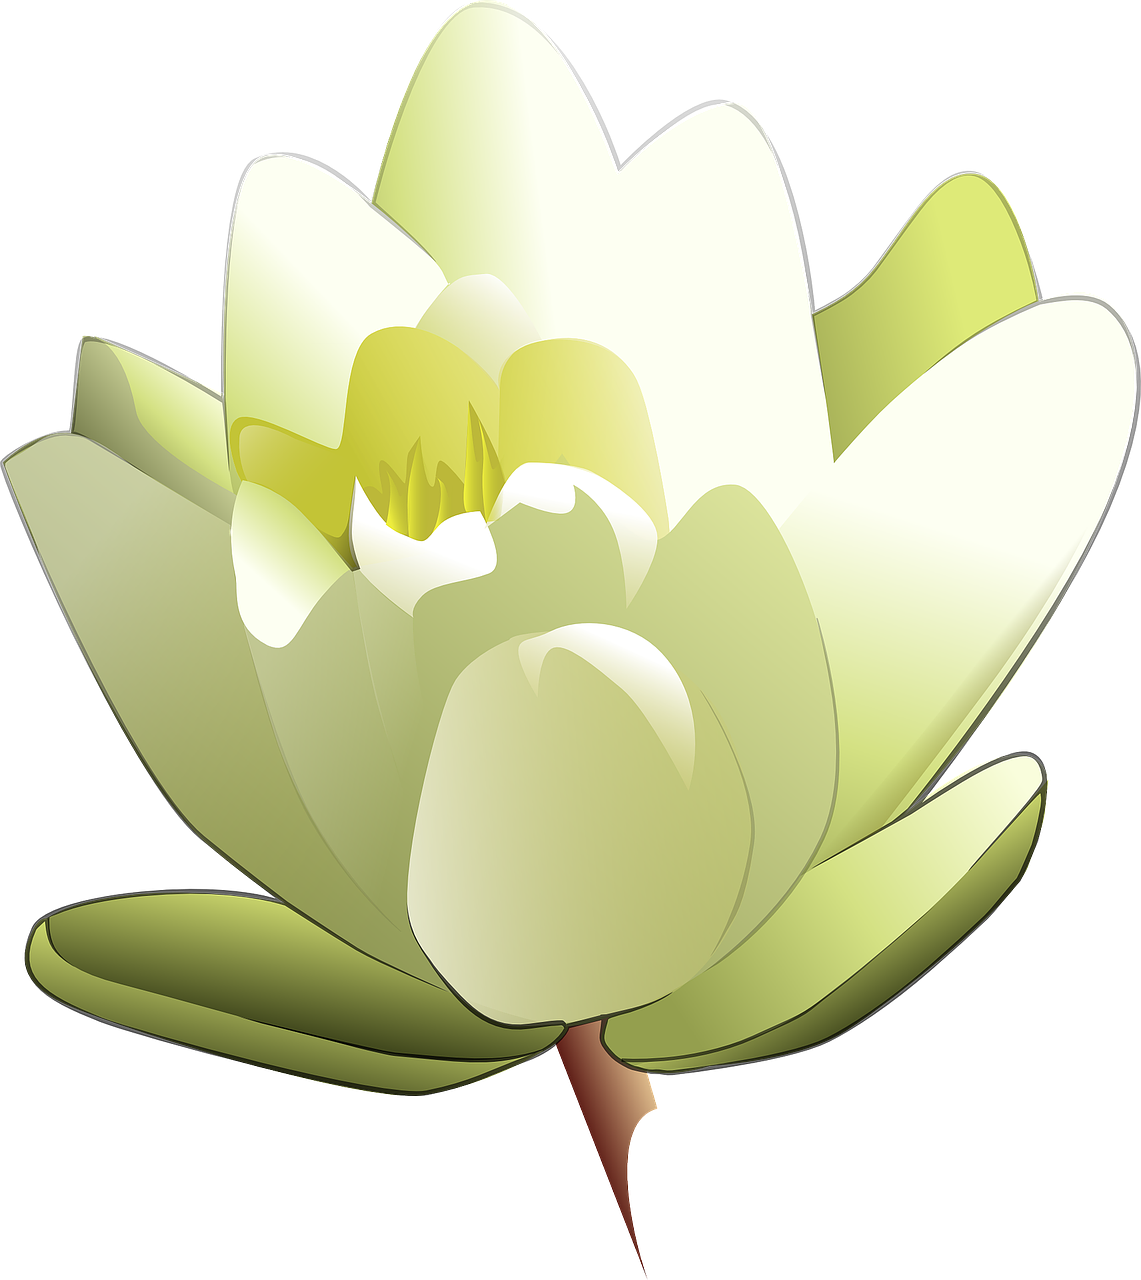 lily white lotus free photo